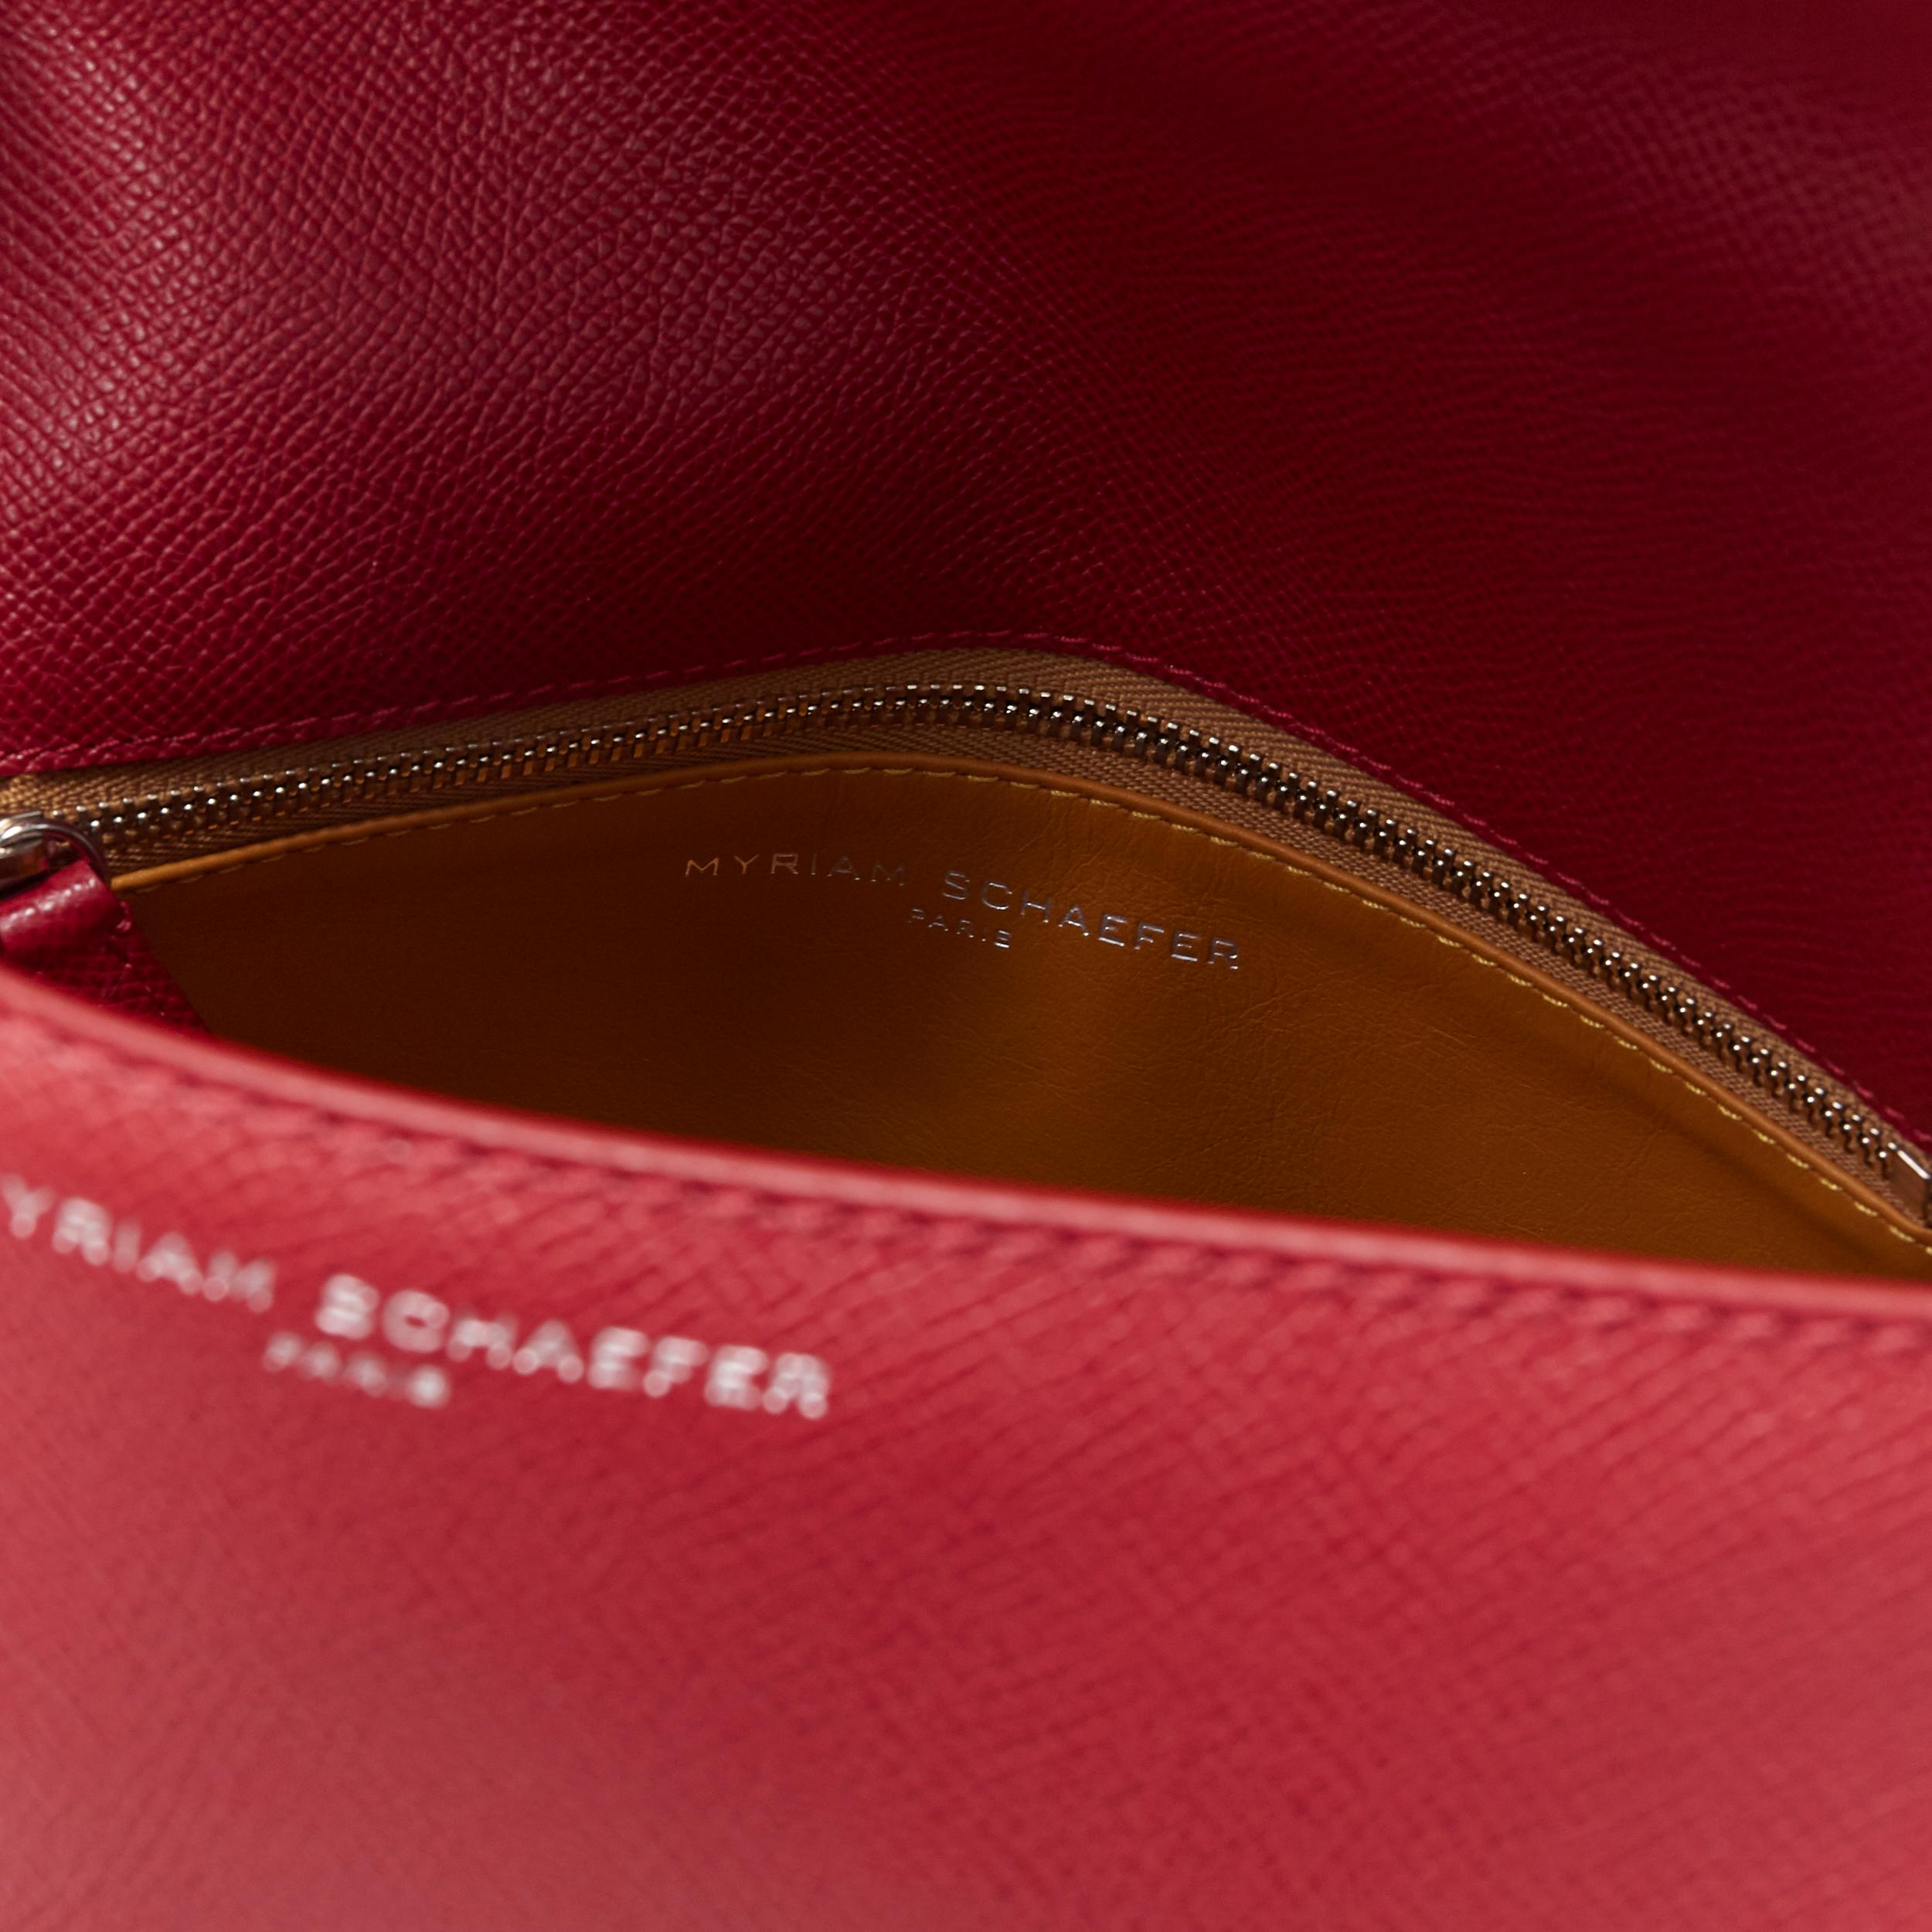 MYRIAM SCHAEFER Byron red leather cut out top handle satchel shoulder bag 5